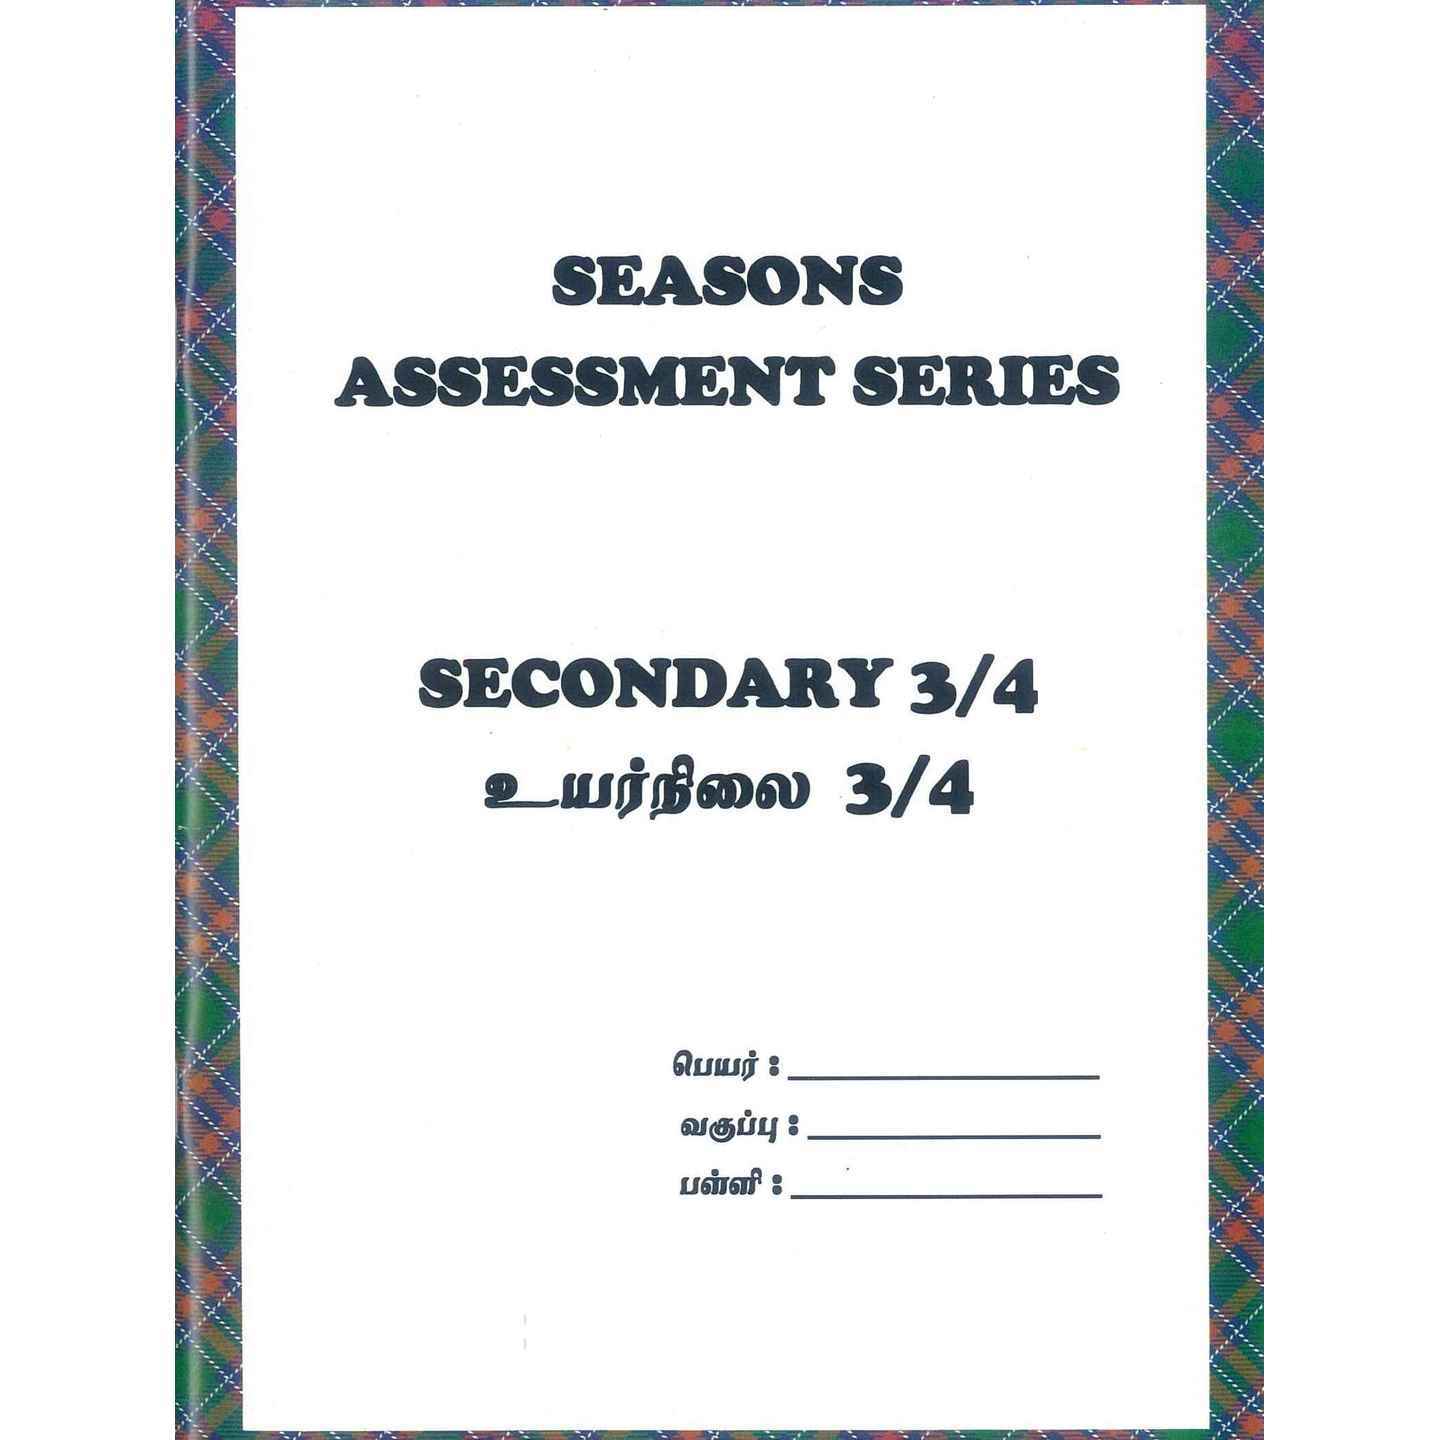 Sec 3/4 SEASONS Assessment Series